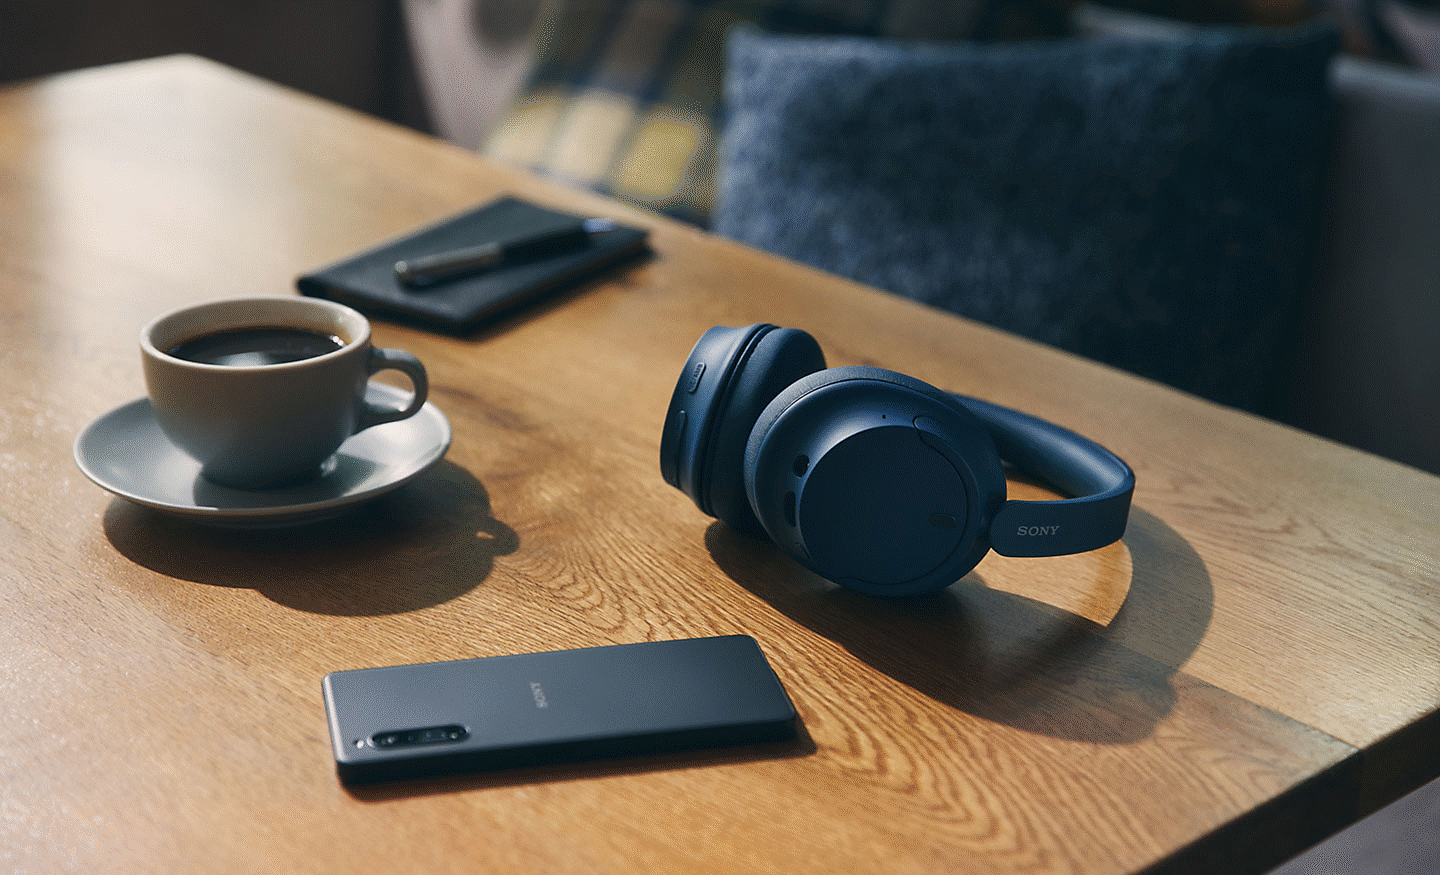 Kép: íróasztalon lévő, fekete színű Sony WH-CH720 fejhallgató egy Xperia mobiltelefonnal